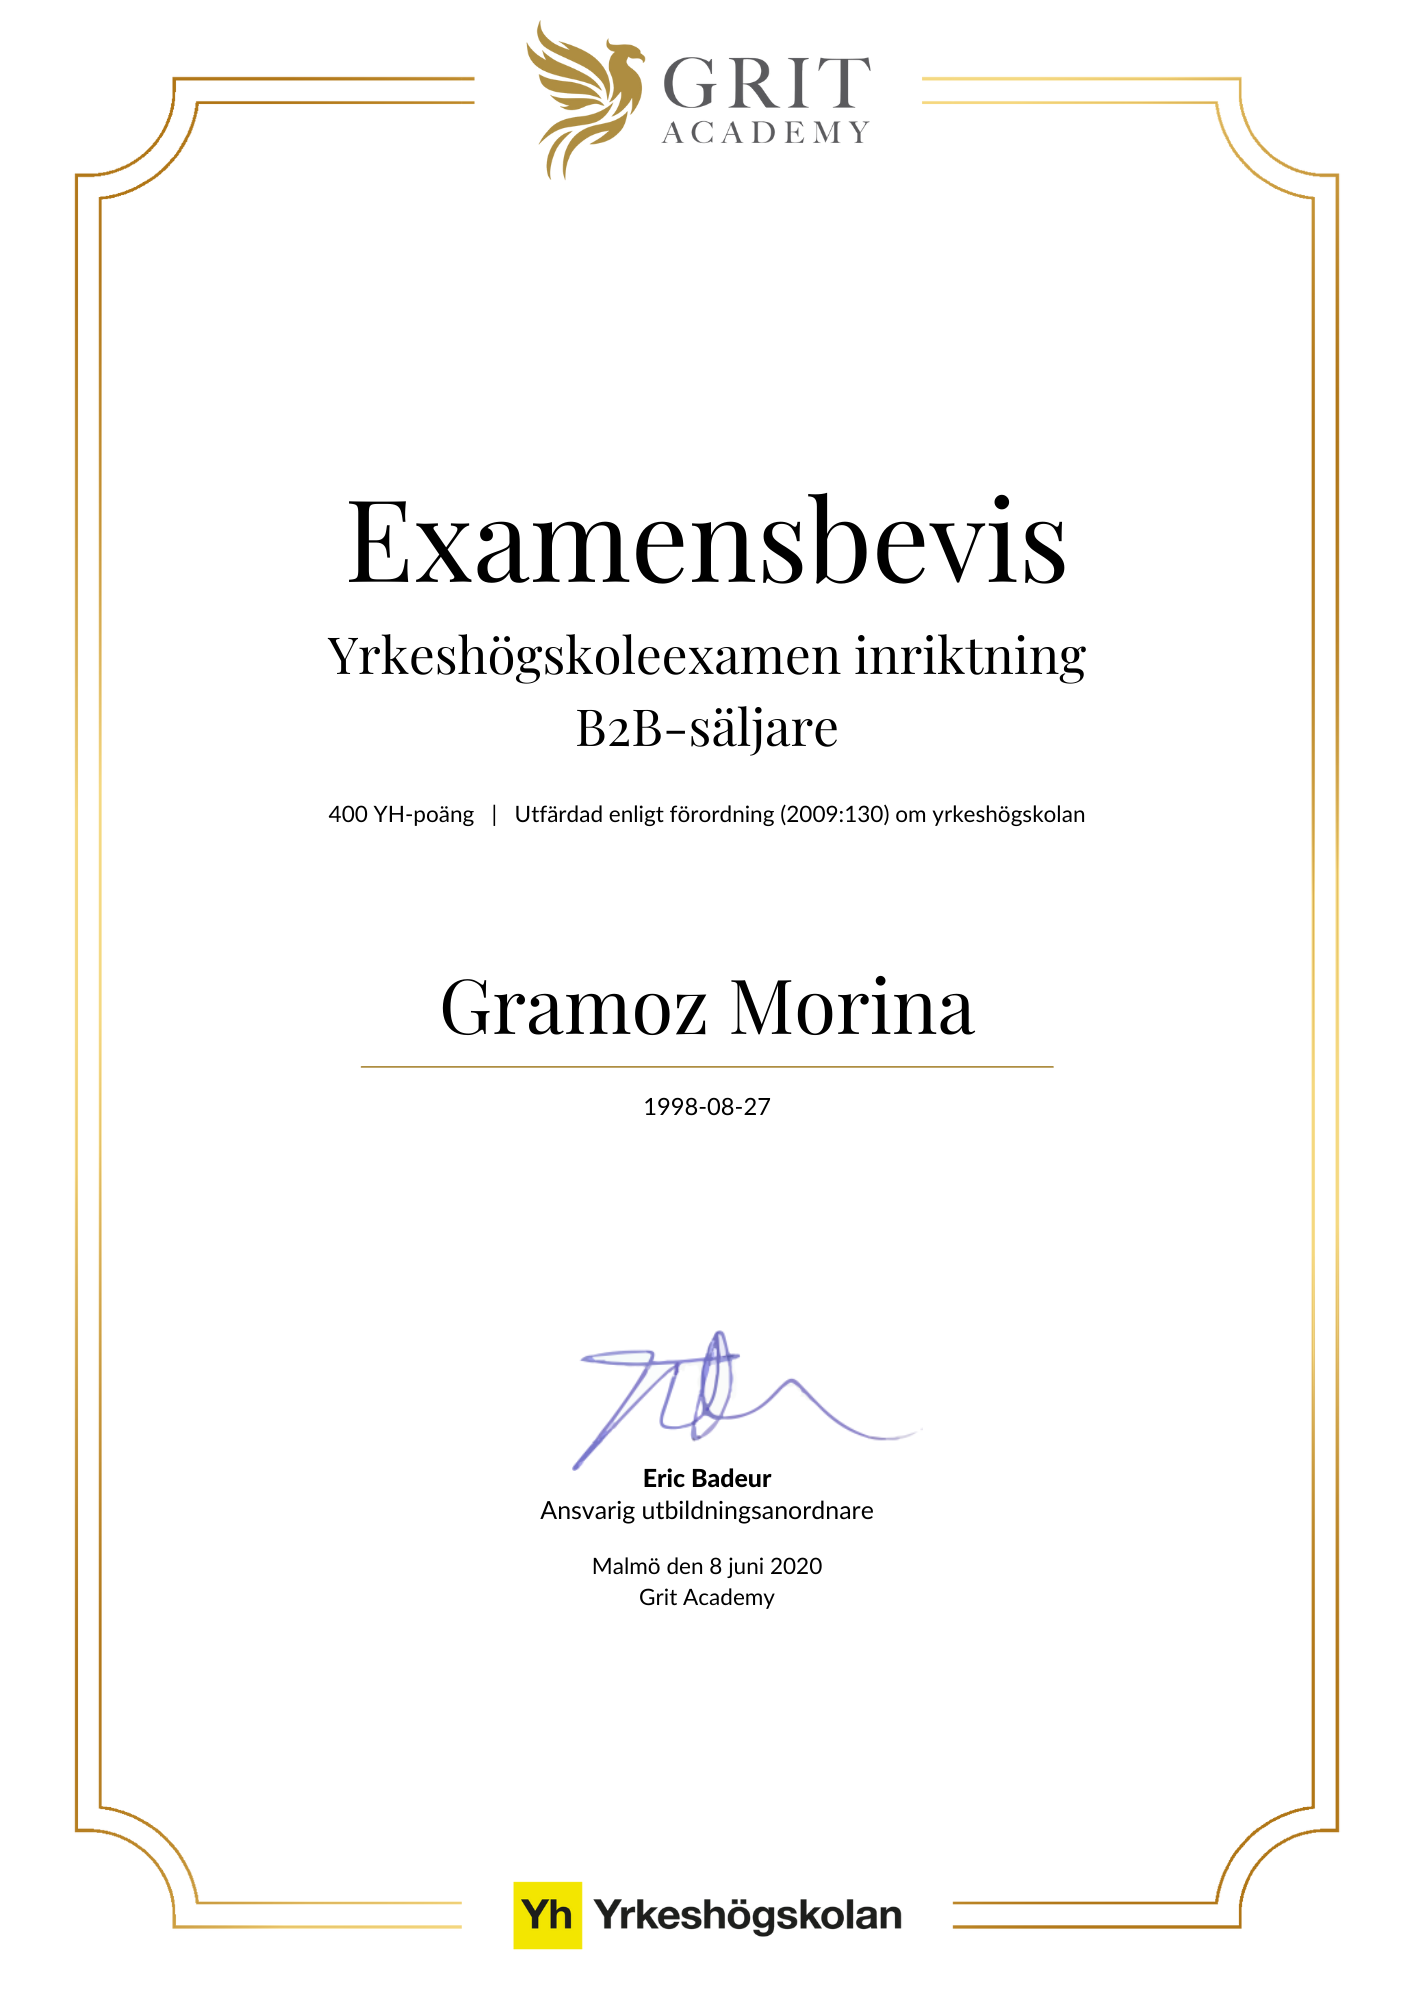 Examensbevis Gramoz Morina - 1